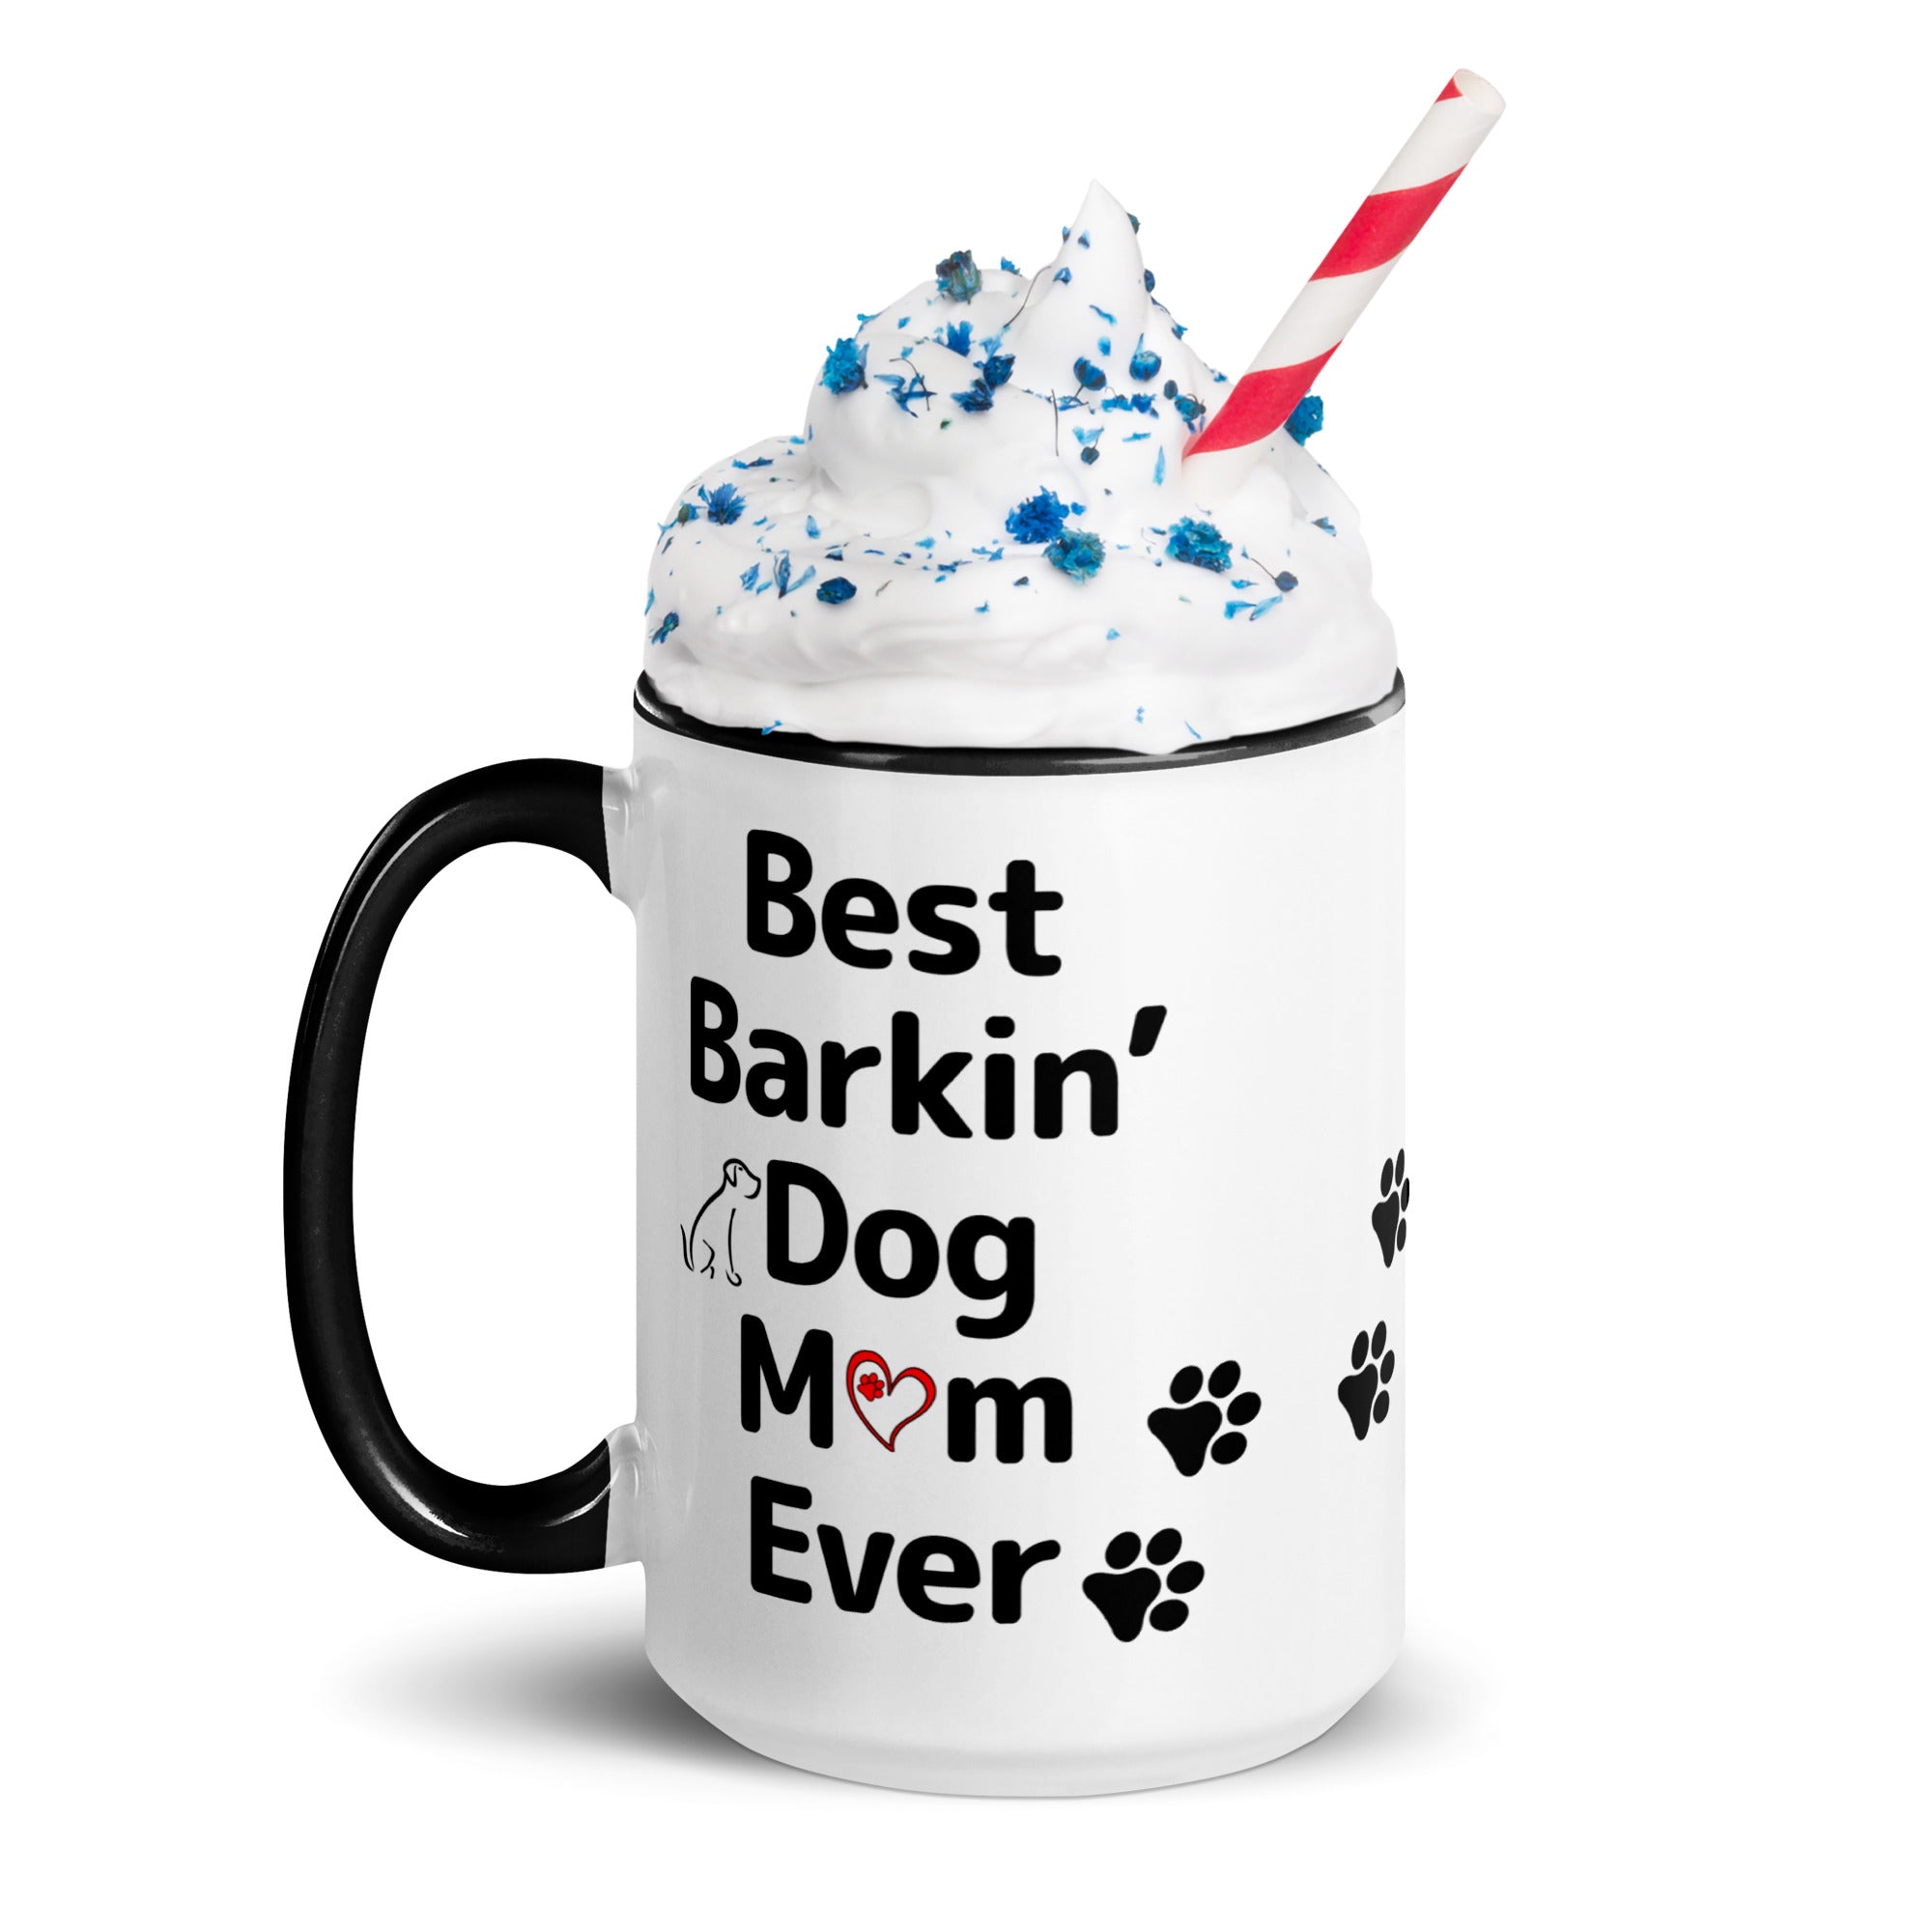 Best Barkin' Dog Mom Ever Mug with Color Inside